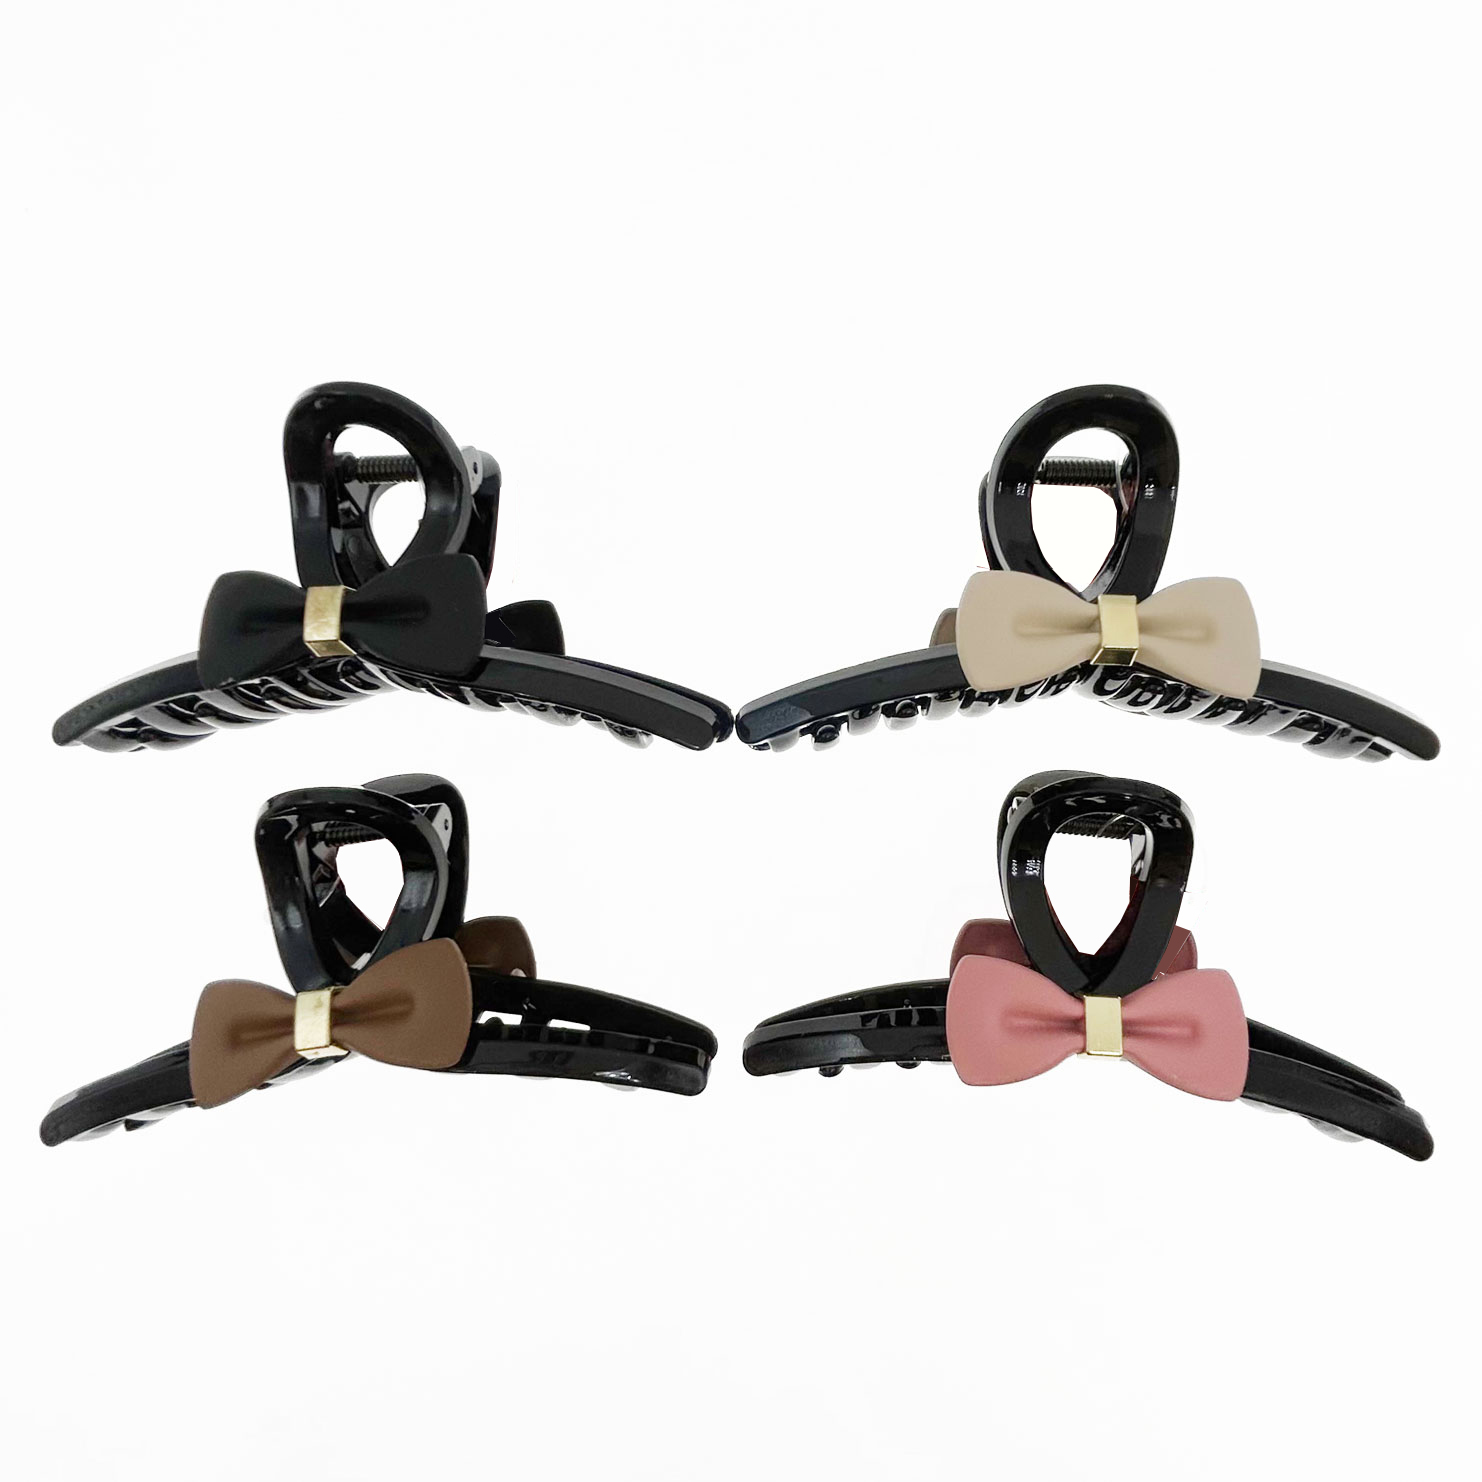 韓國 金屬 蝴蝶結 造型 四色 鯊魚夾 髮夾 髮飾